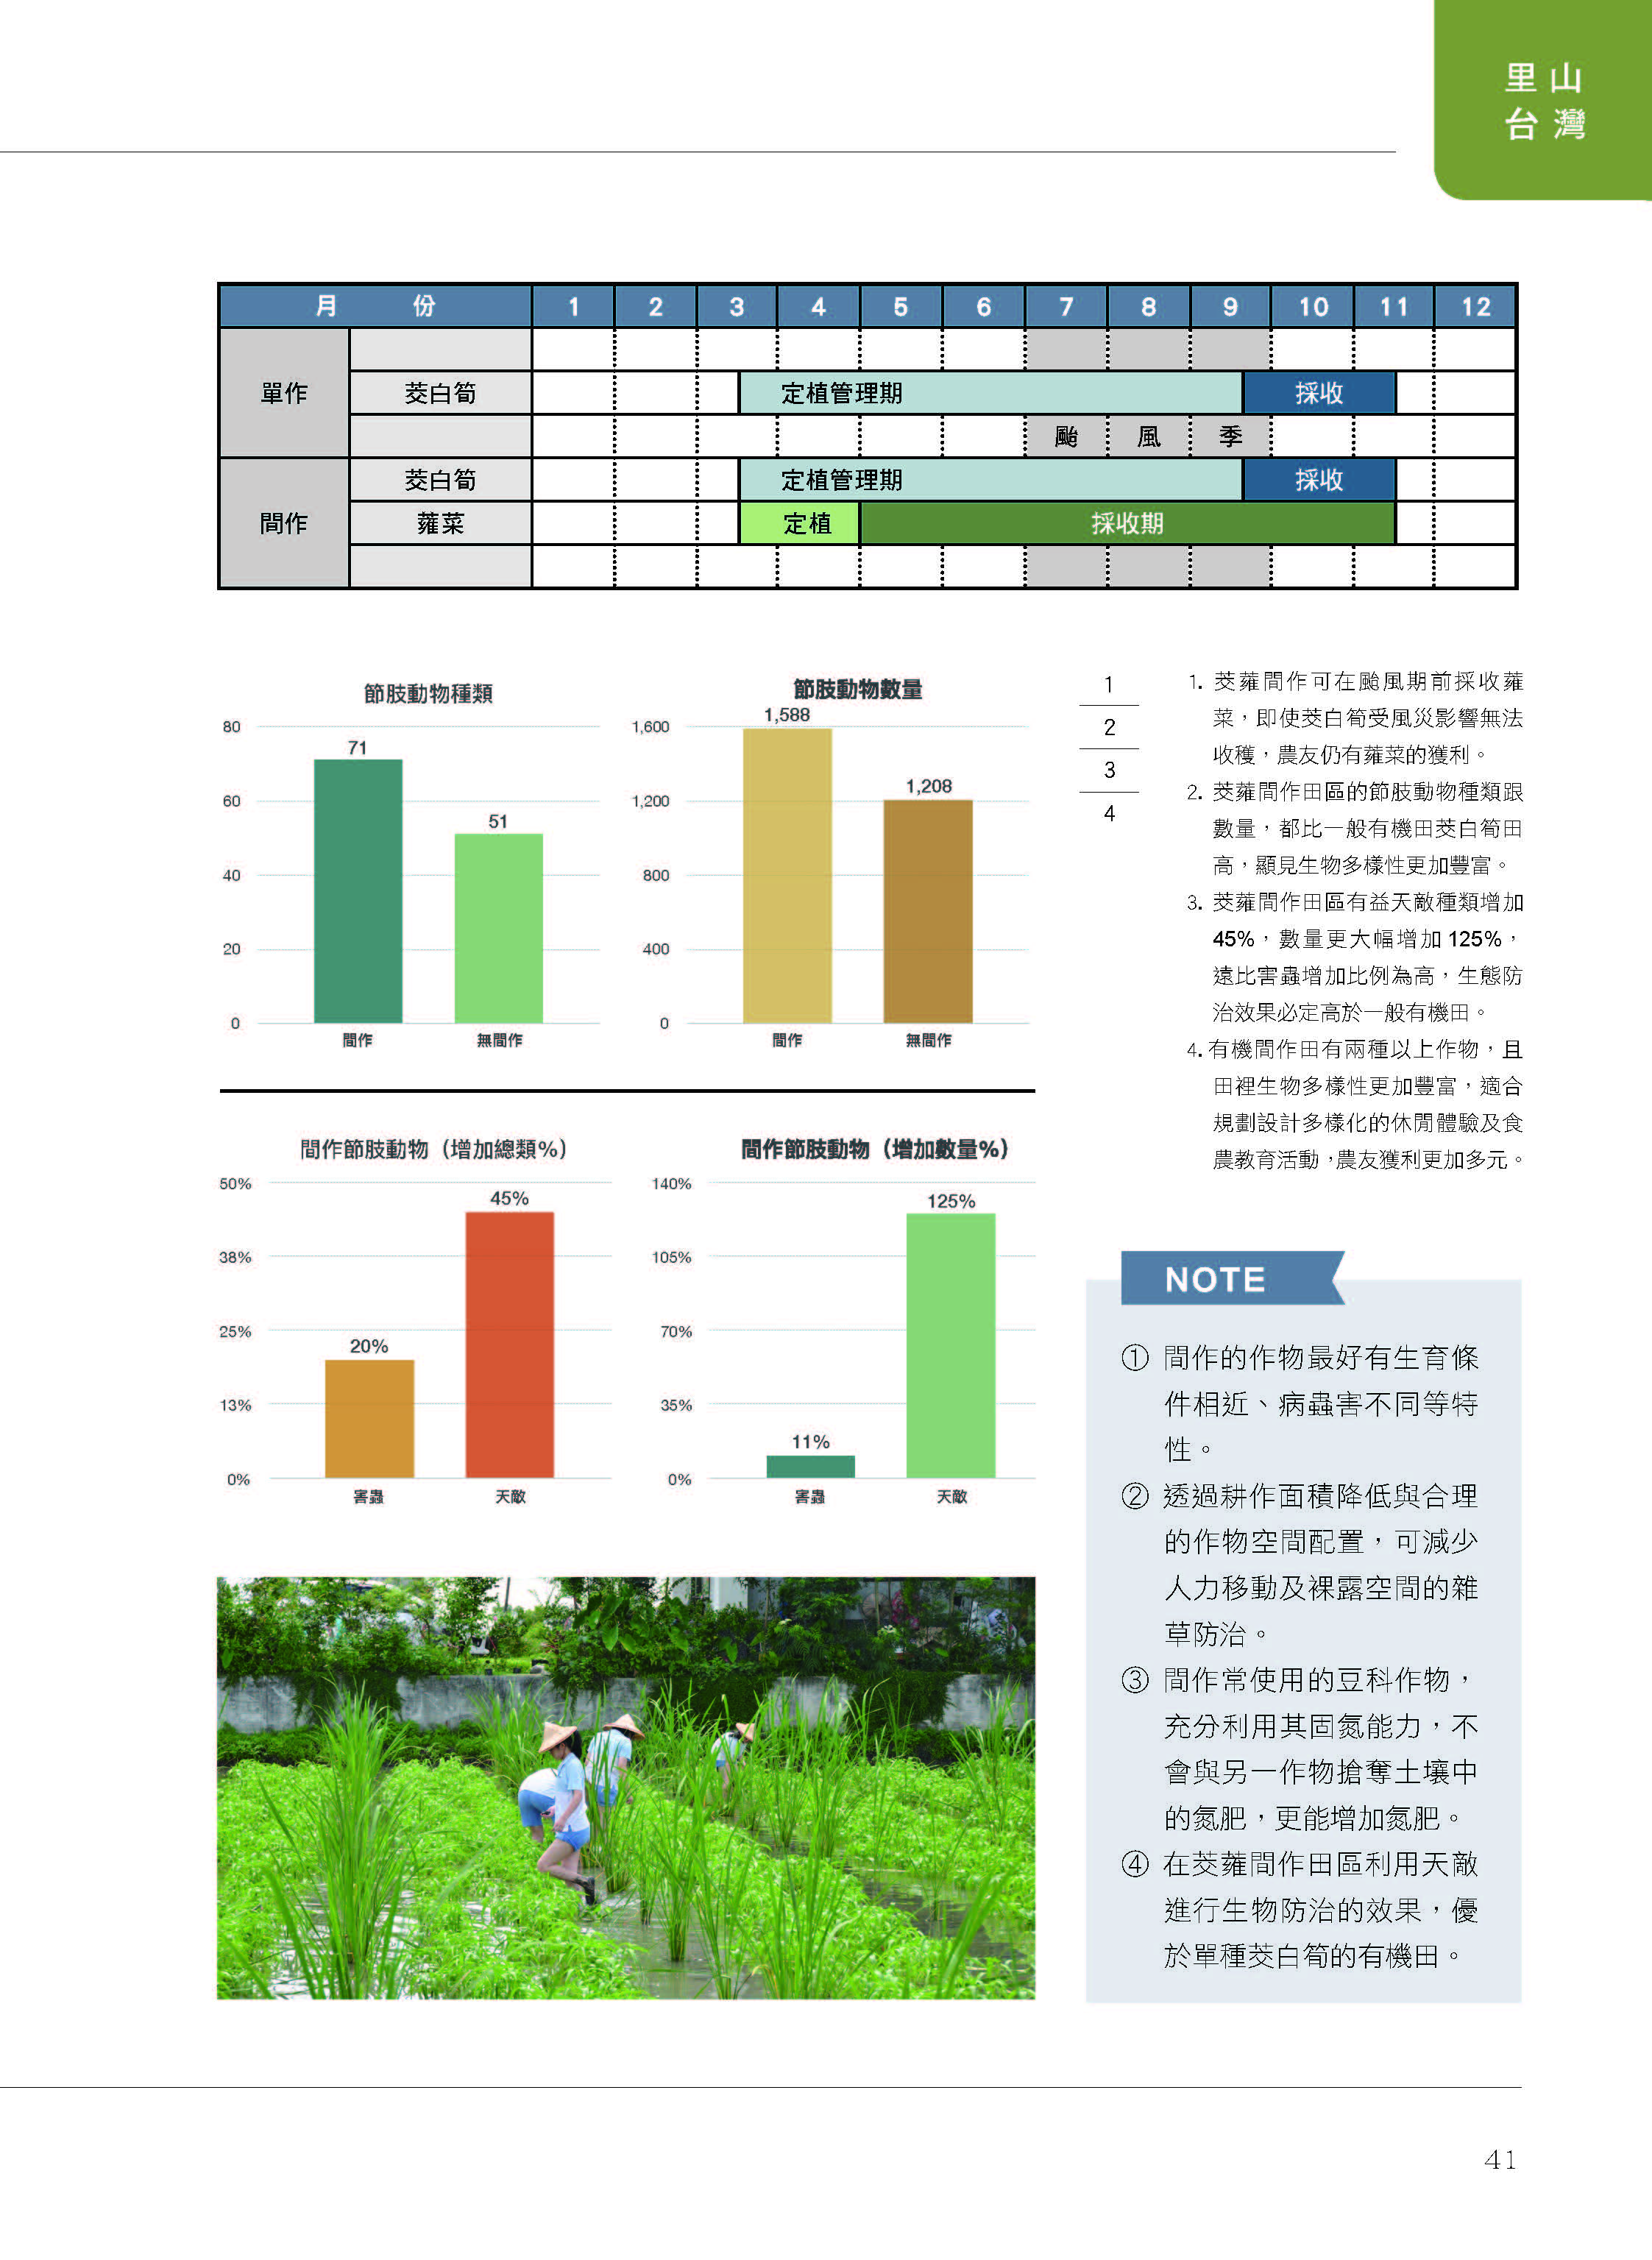 里山台灣－專欄3－研究與現場:多元收益與友善環境之間作生產模式-6